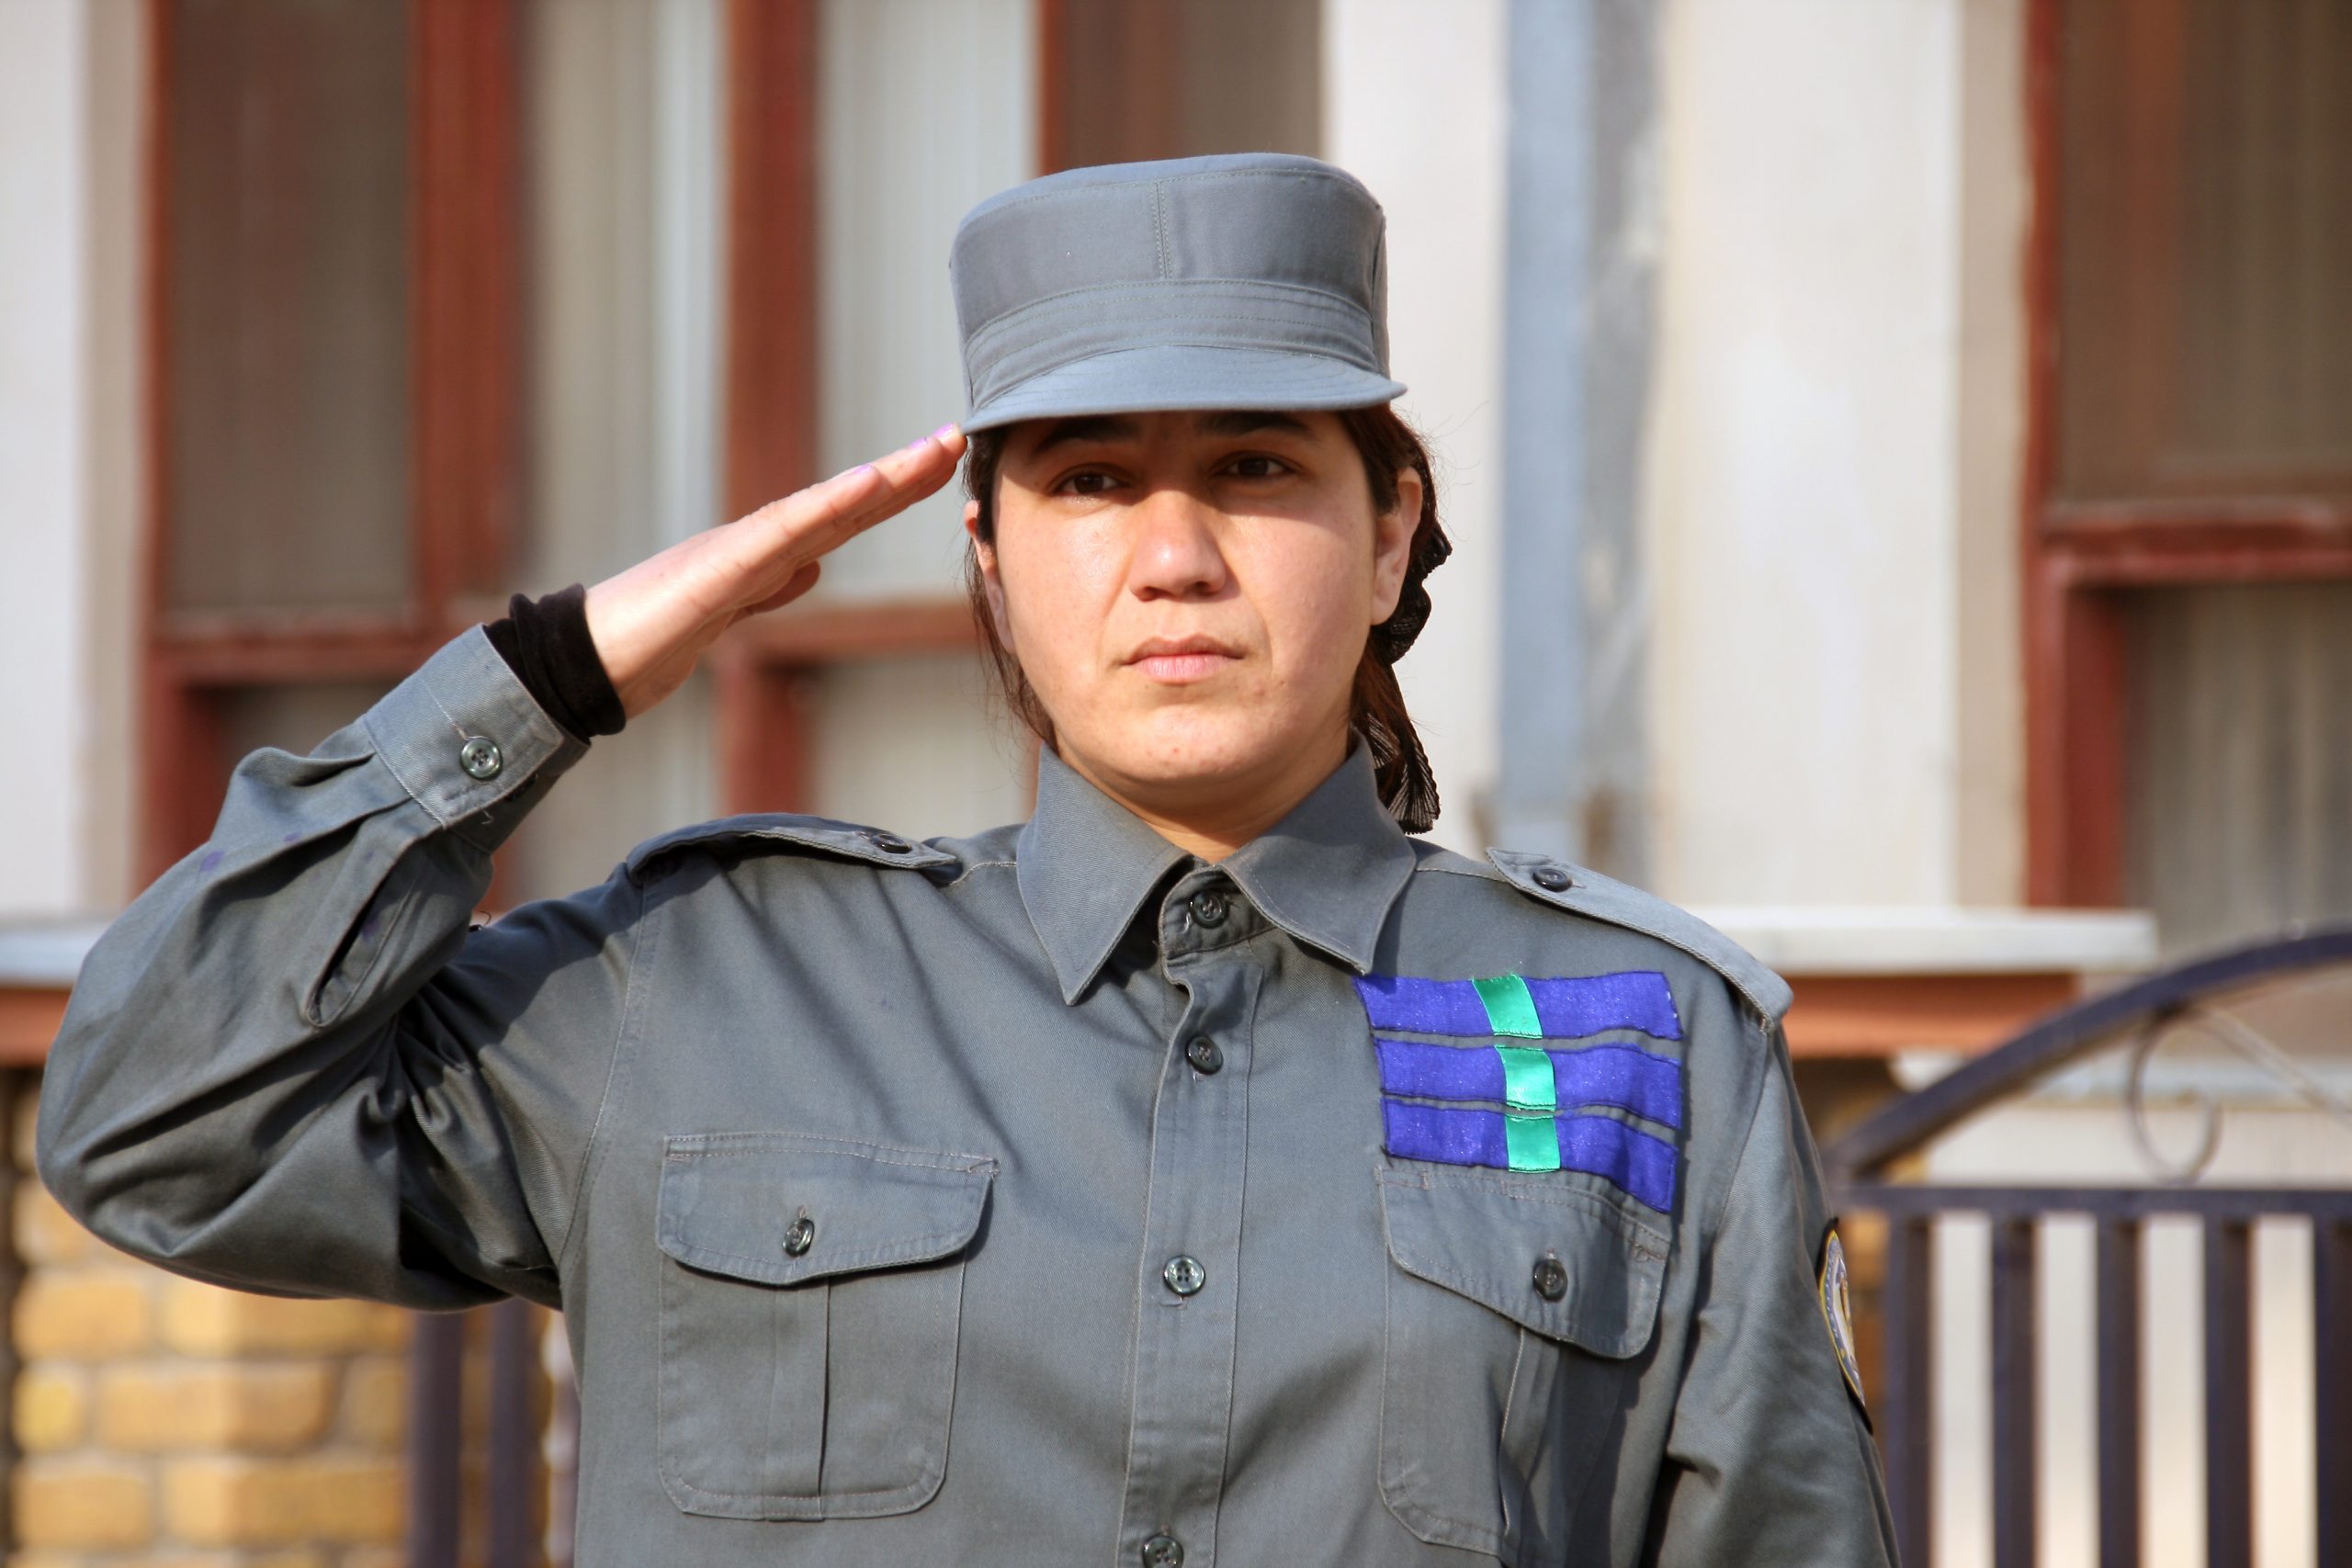 Una donna poliziotto, 2010. ©Mariam Alimi